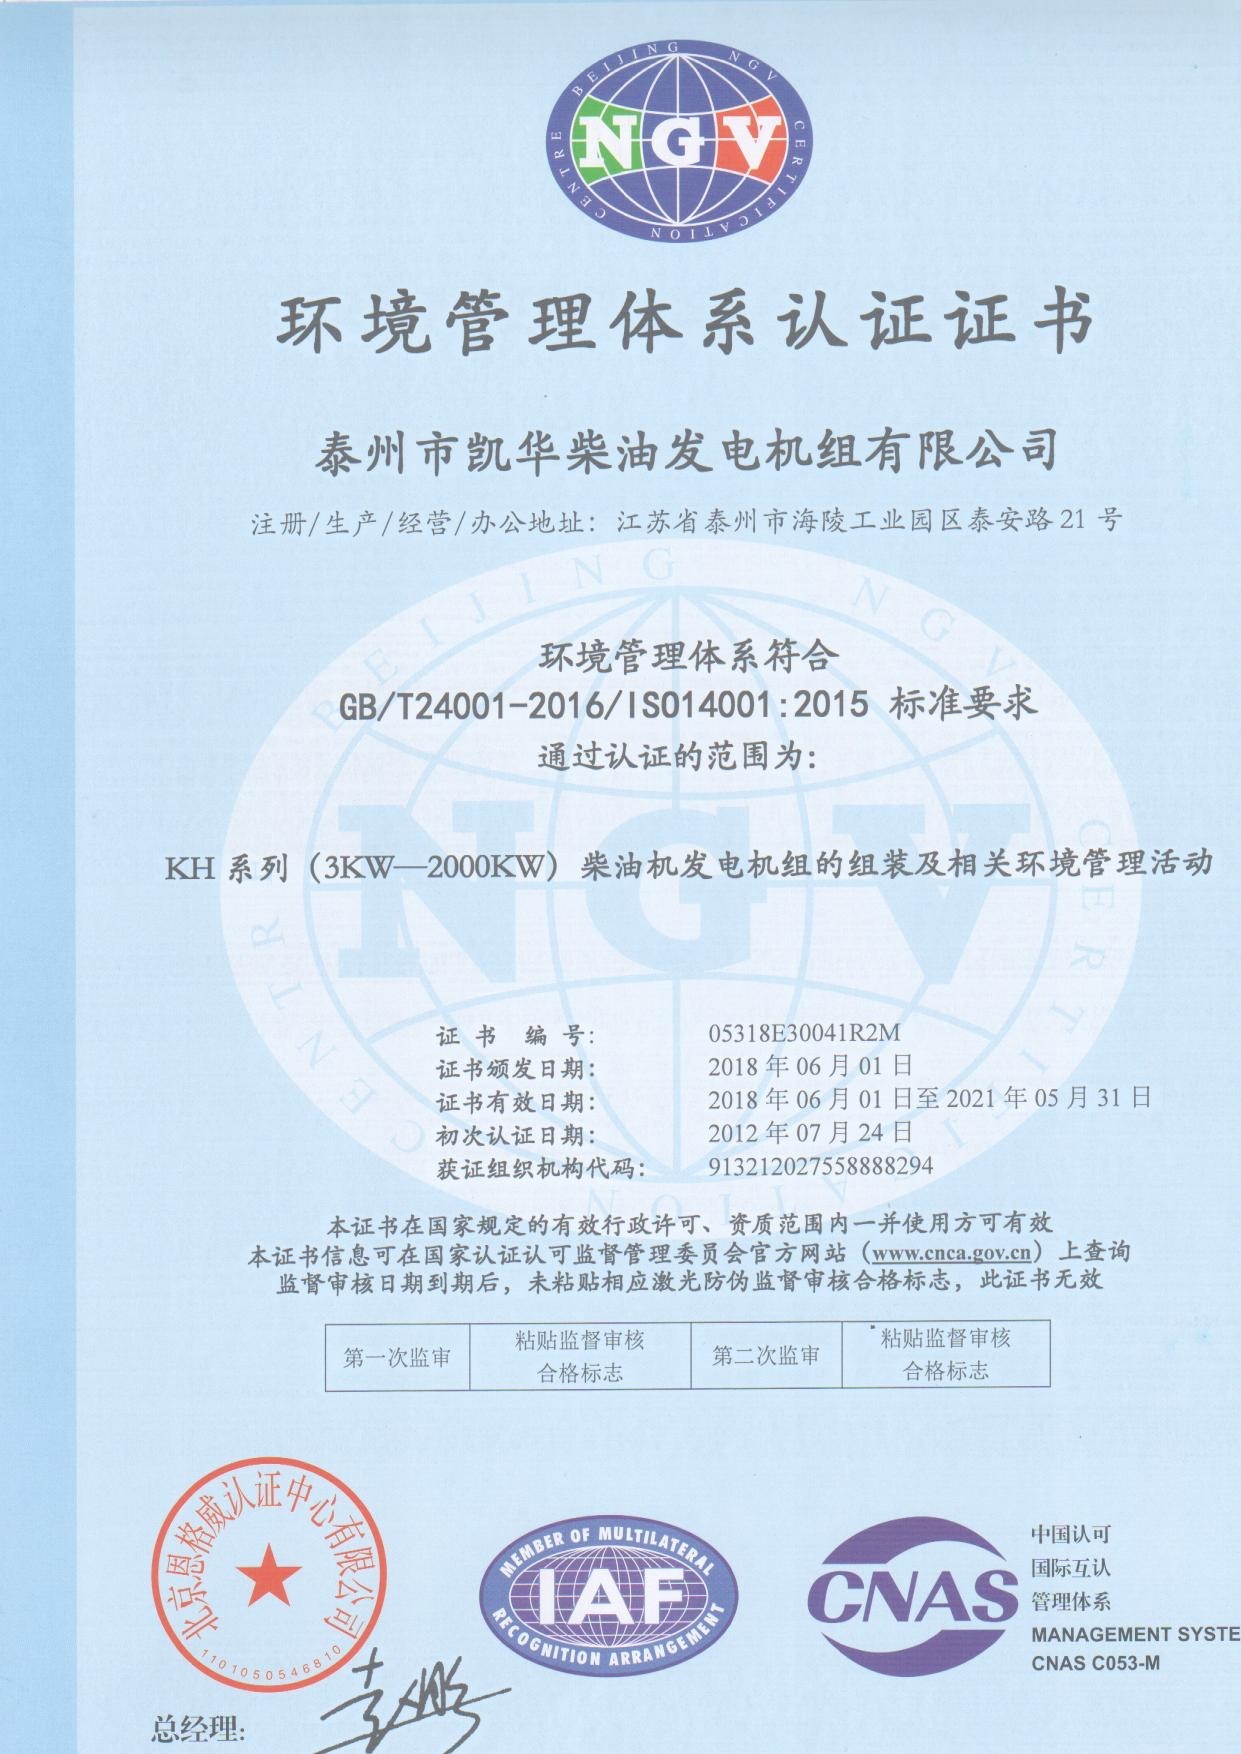 ISO14001:2015环境体系认证